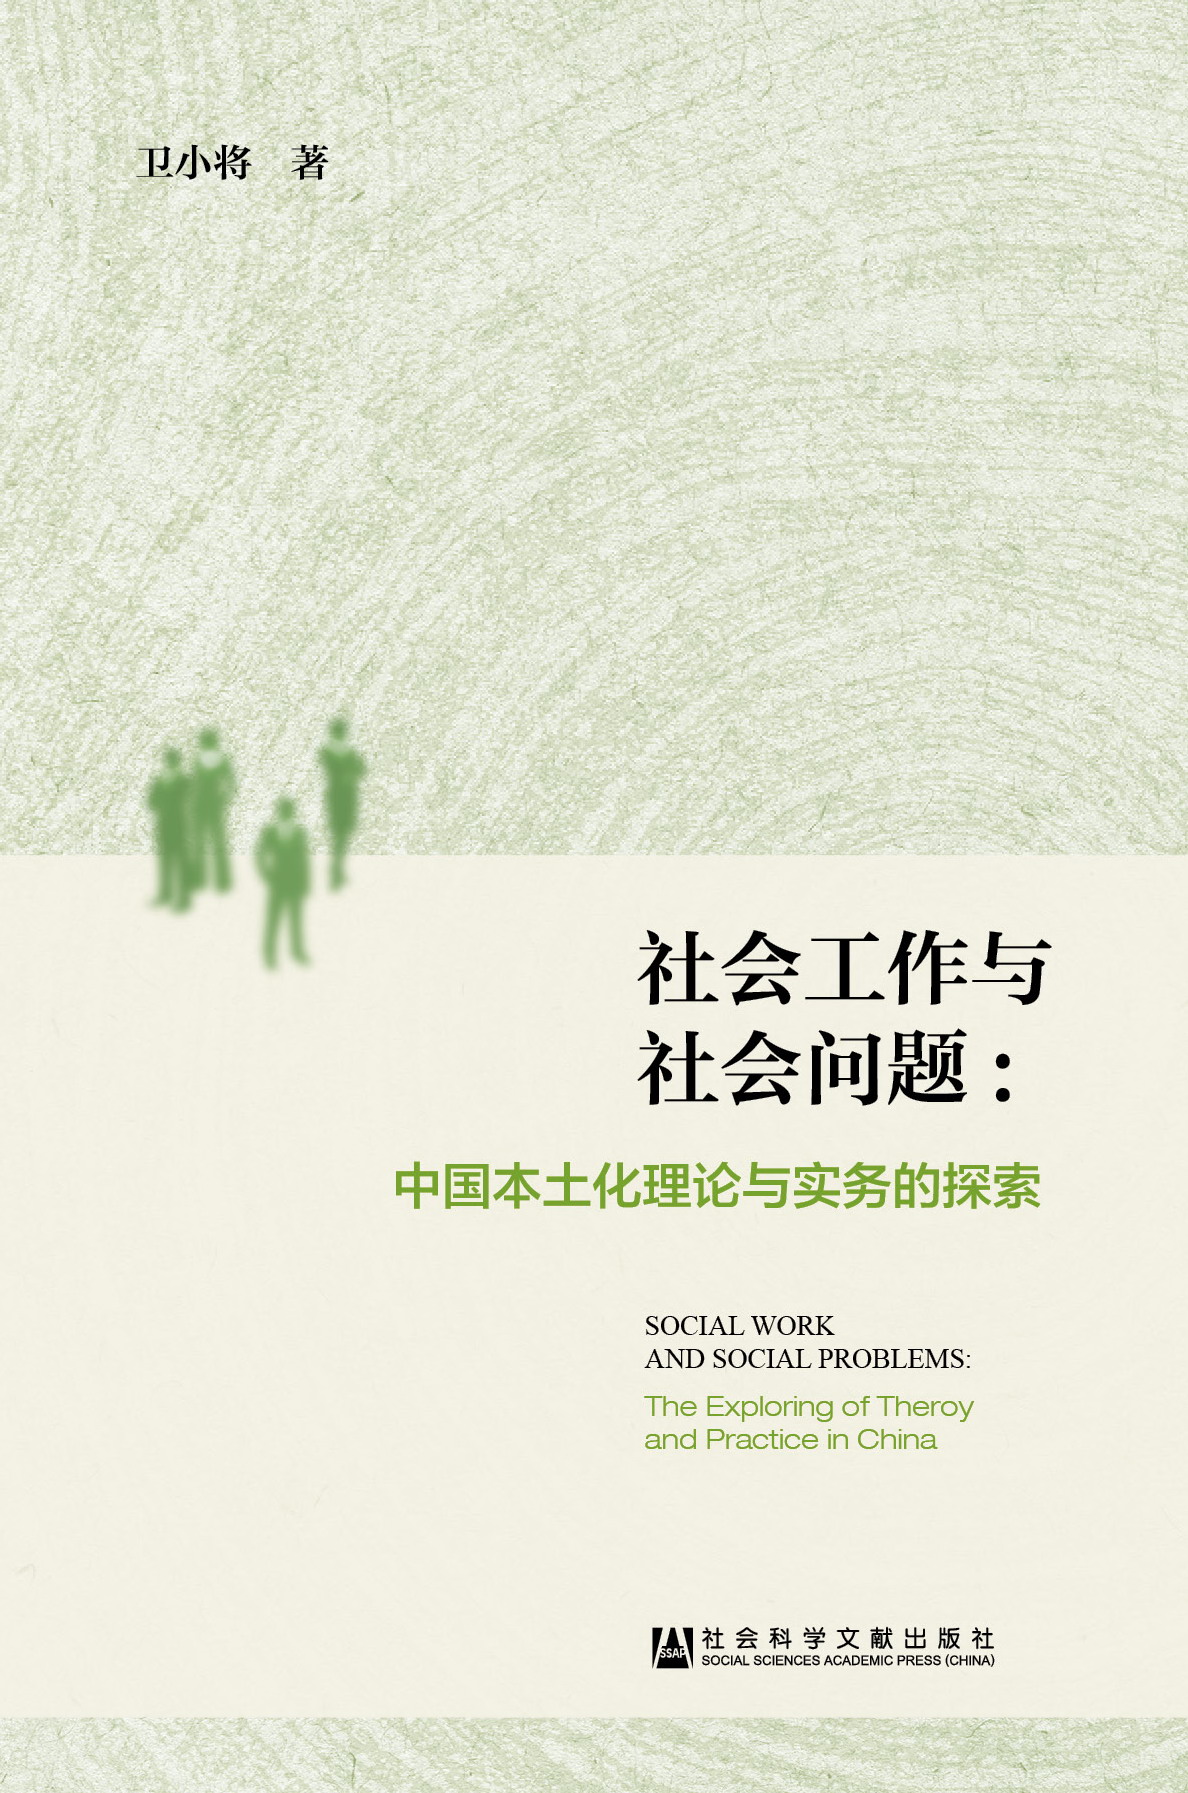 社会工作与社会问题:中国本土化理论与实务的探索